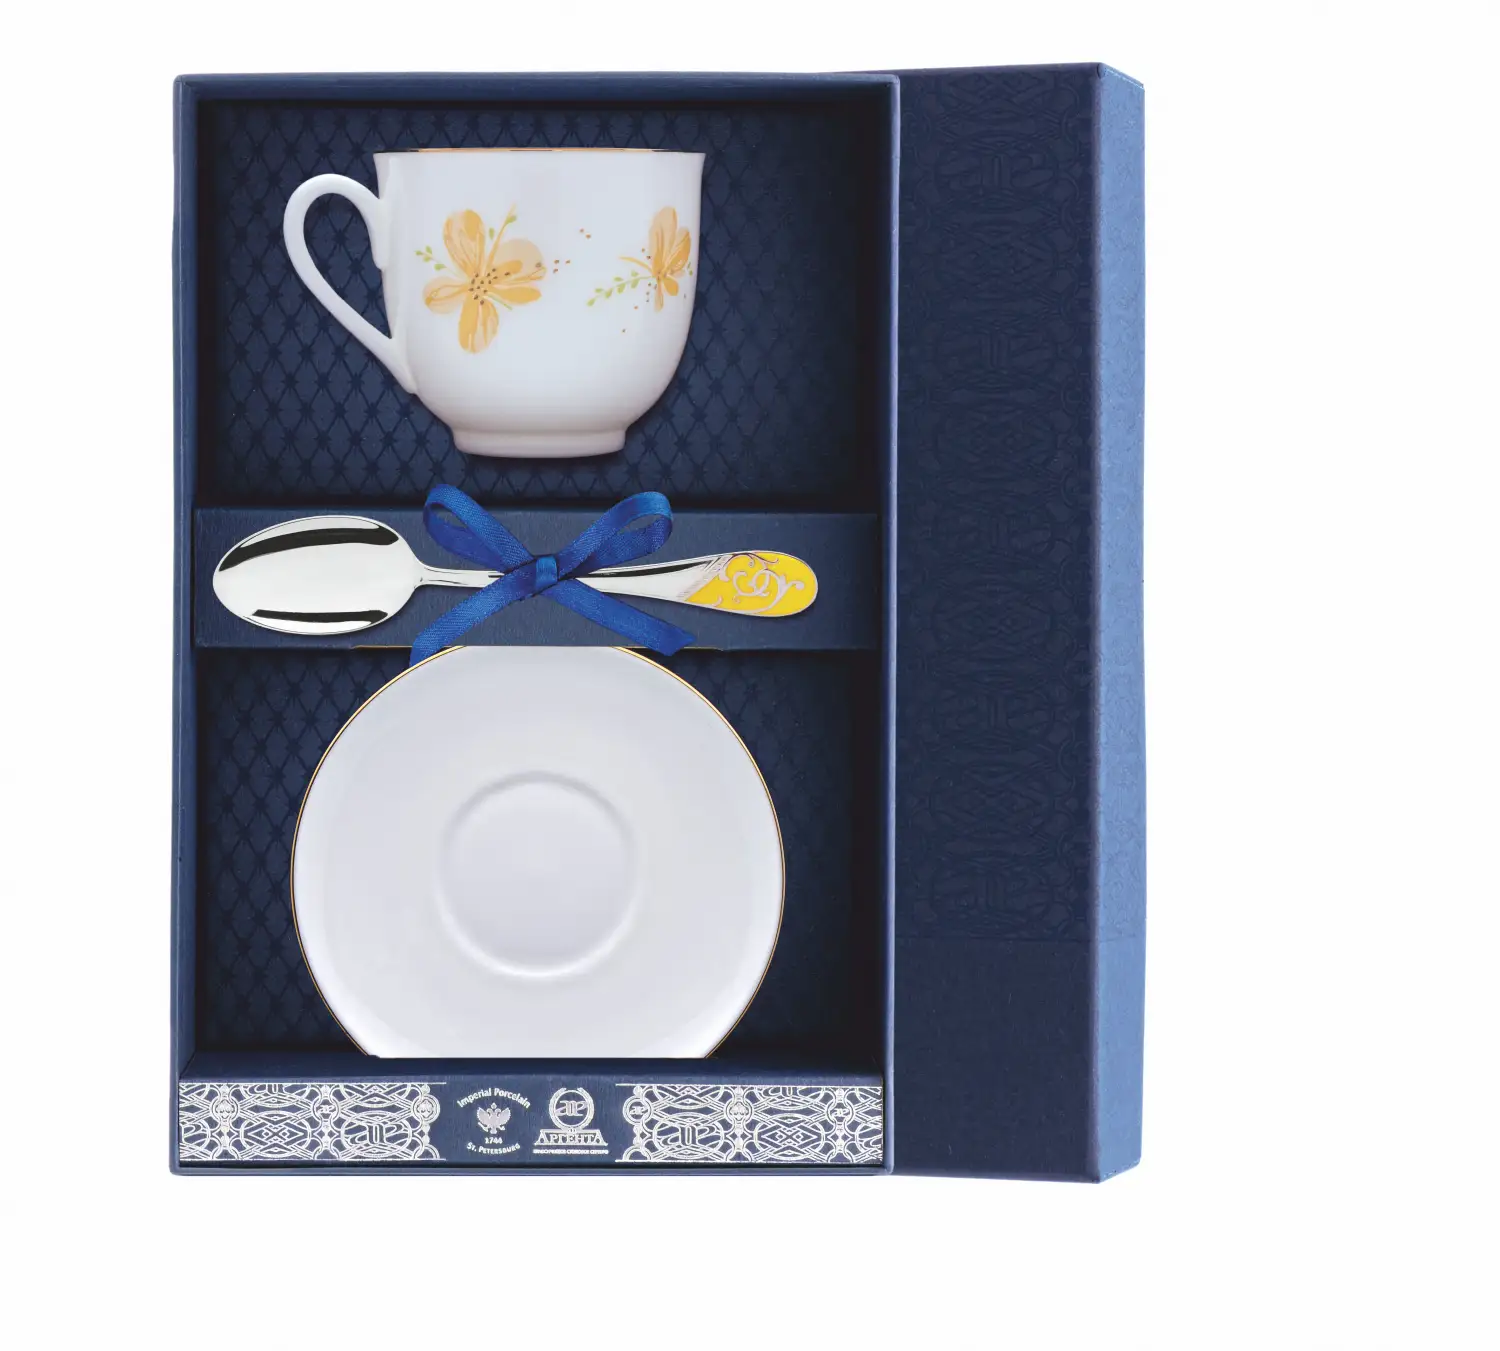 Набор чайный Ландыш - Желтые цветы: блюдце, ложка, чашка (Серебро 925) набор чайный ландыш желтые цветы ложка рамка для фото чашка серебро 925